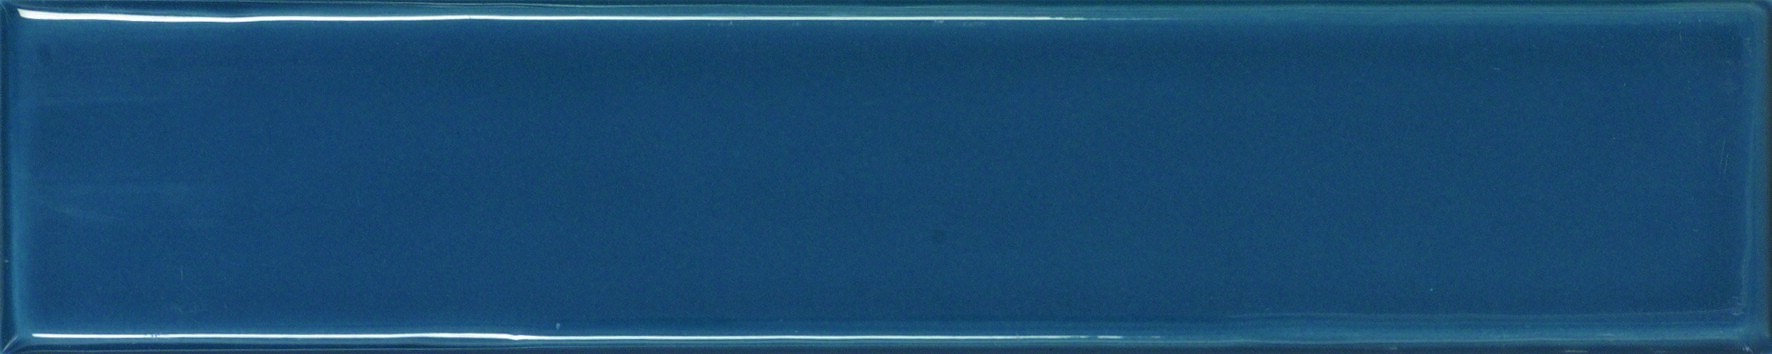 Craven Dunnill REN470 Bijou Gloss Norfolk Blue Wall Tile 250x50mm